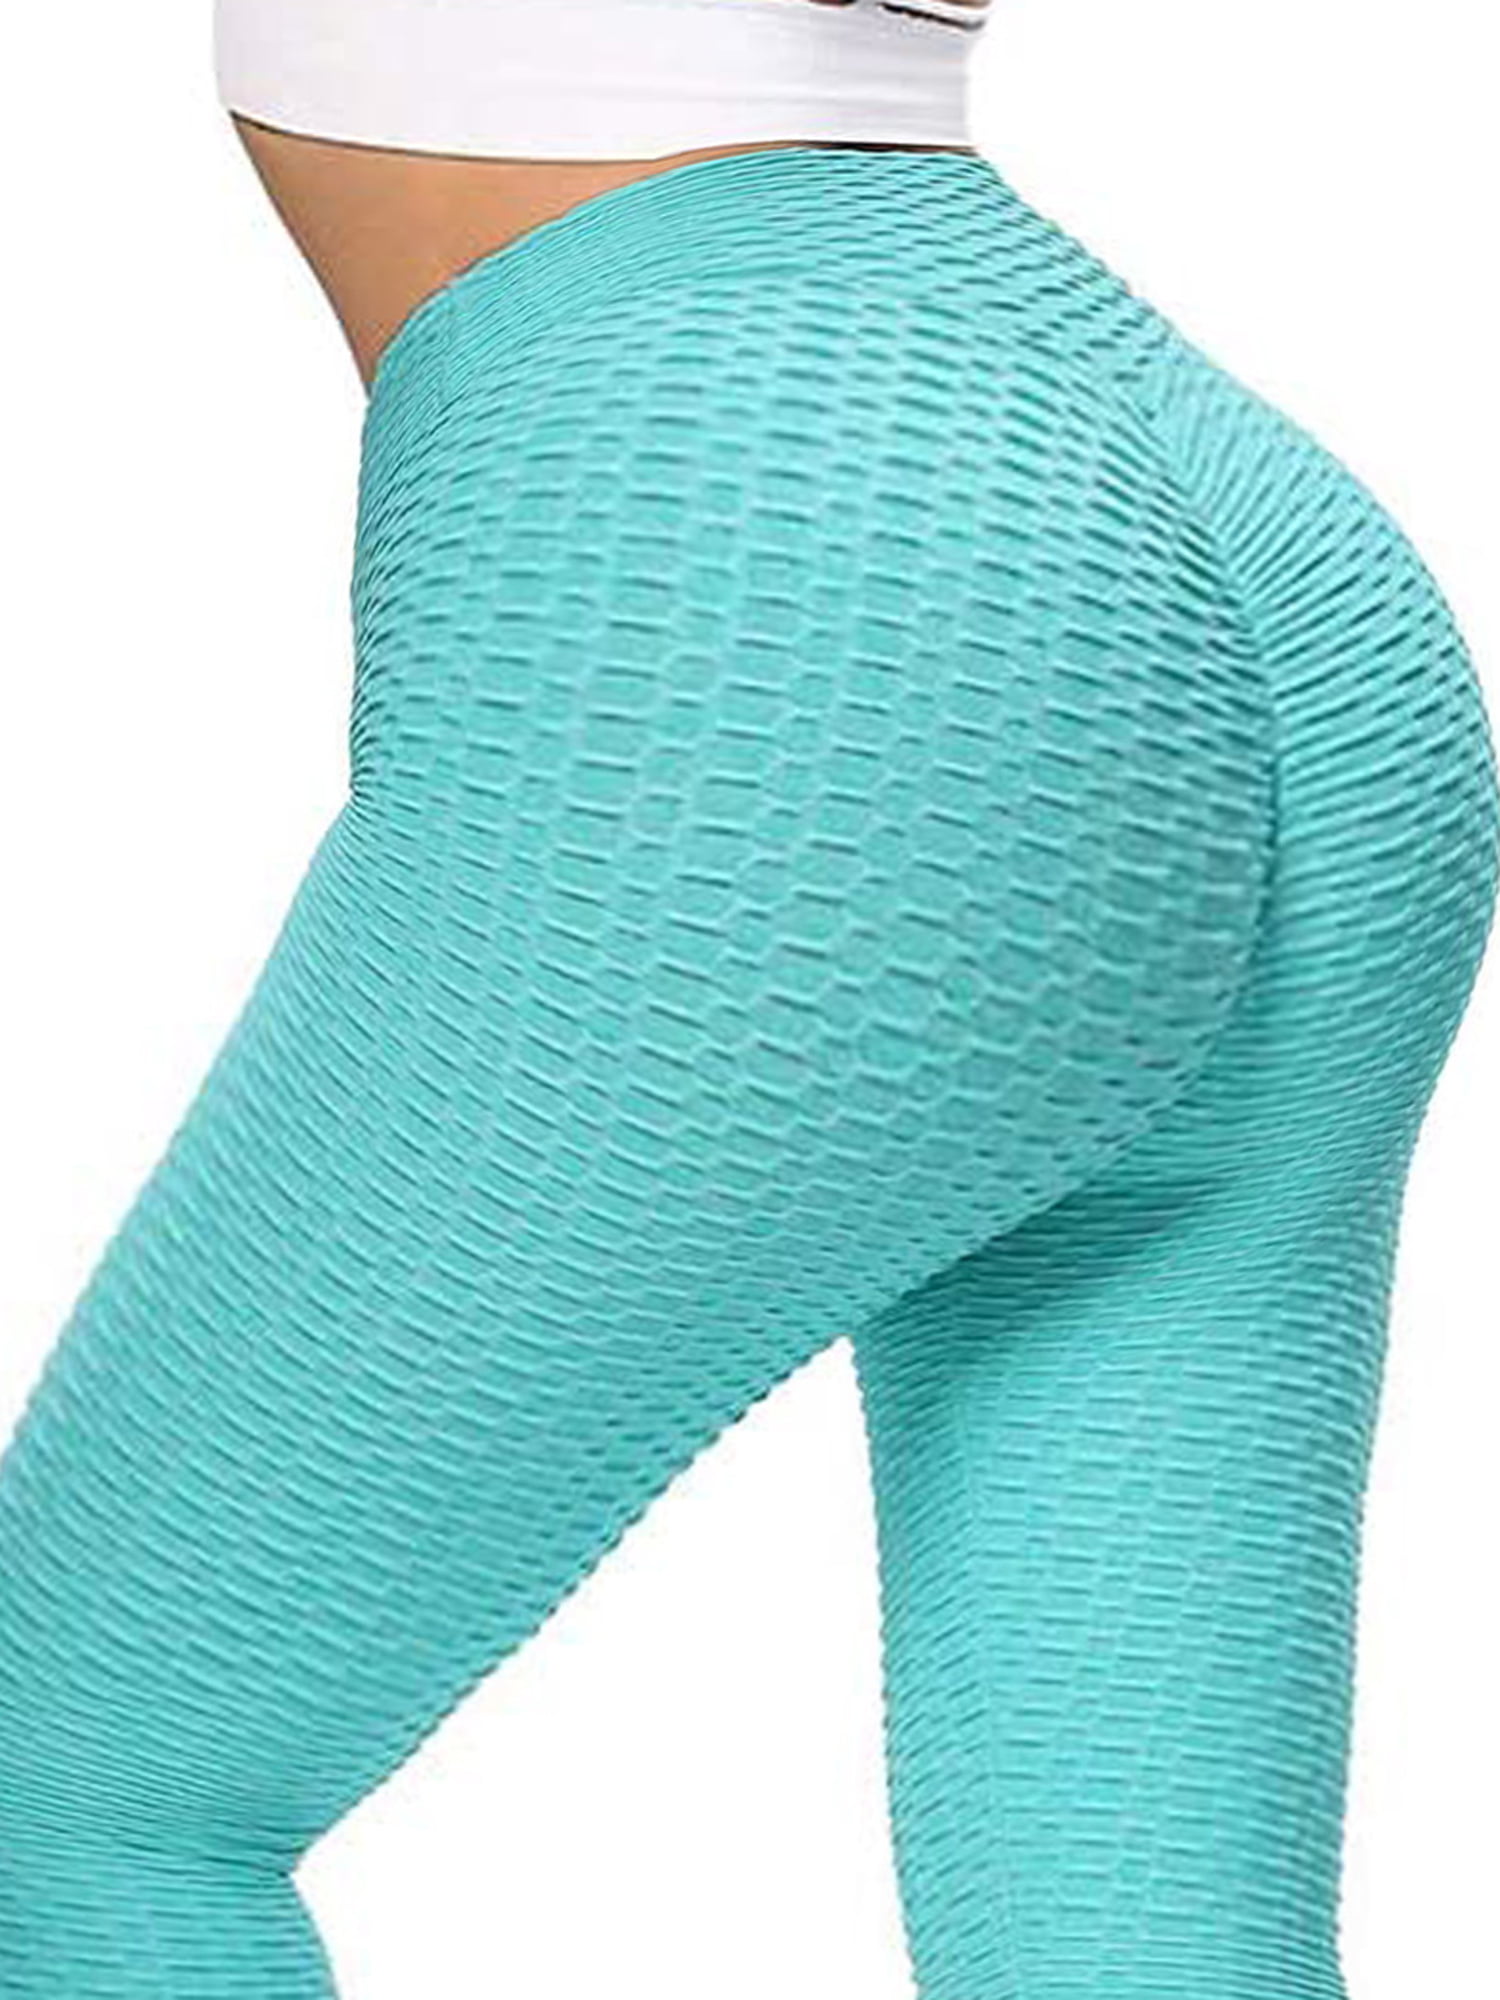 Dodoing Scrunch Butt Yoga Pants High Waisted Textured Butt Lift Leggings For Women Booty Lifting 